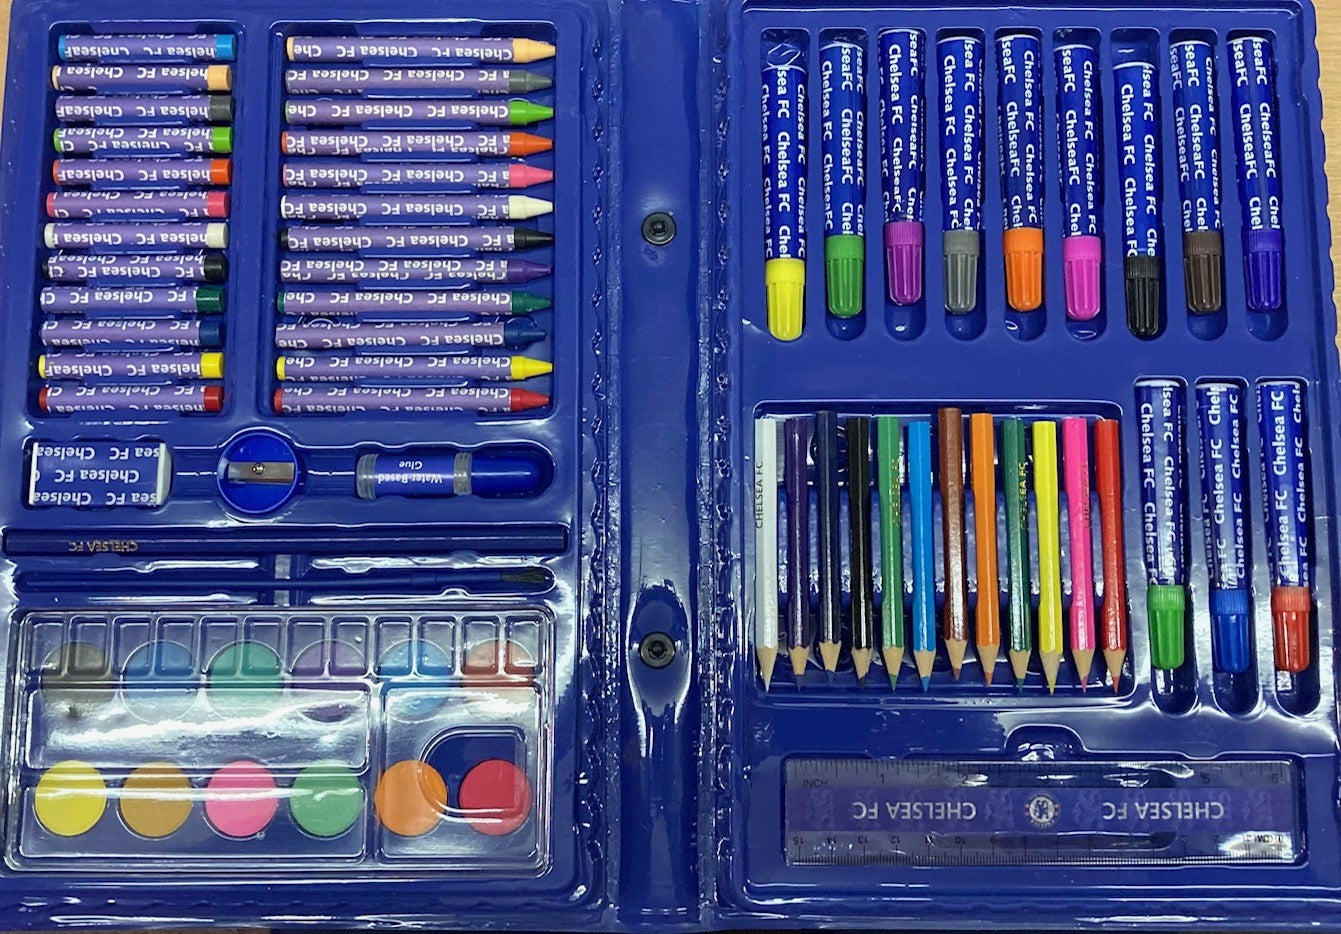 Chelsea 68 Piece Travel Set Fab For Kids Colouring Pens Pencils Ruler Paint